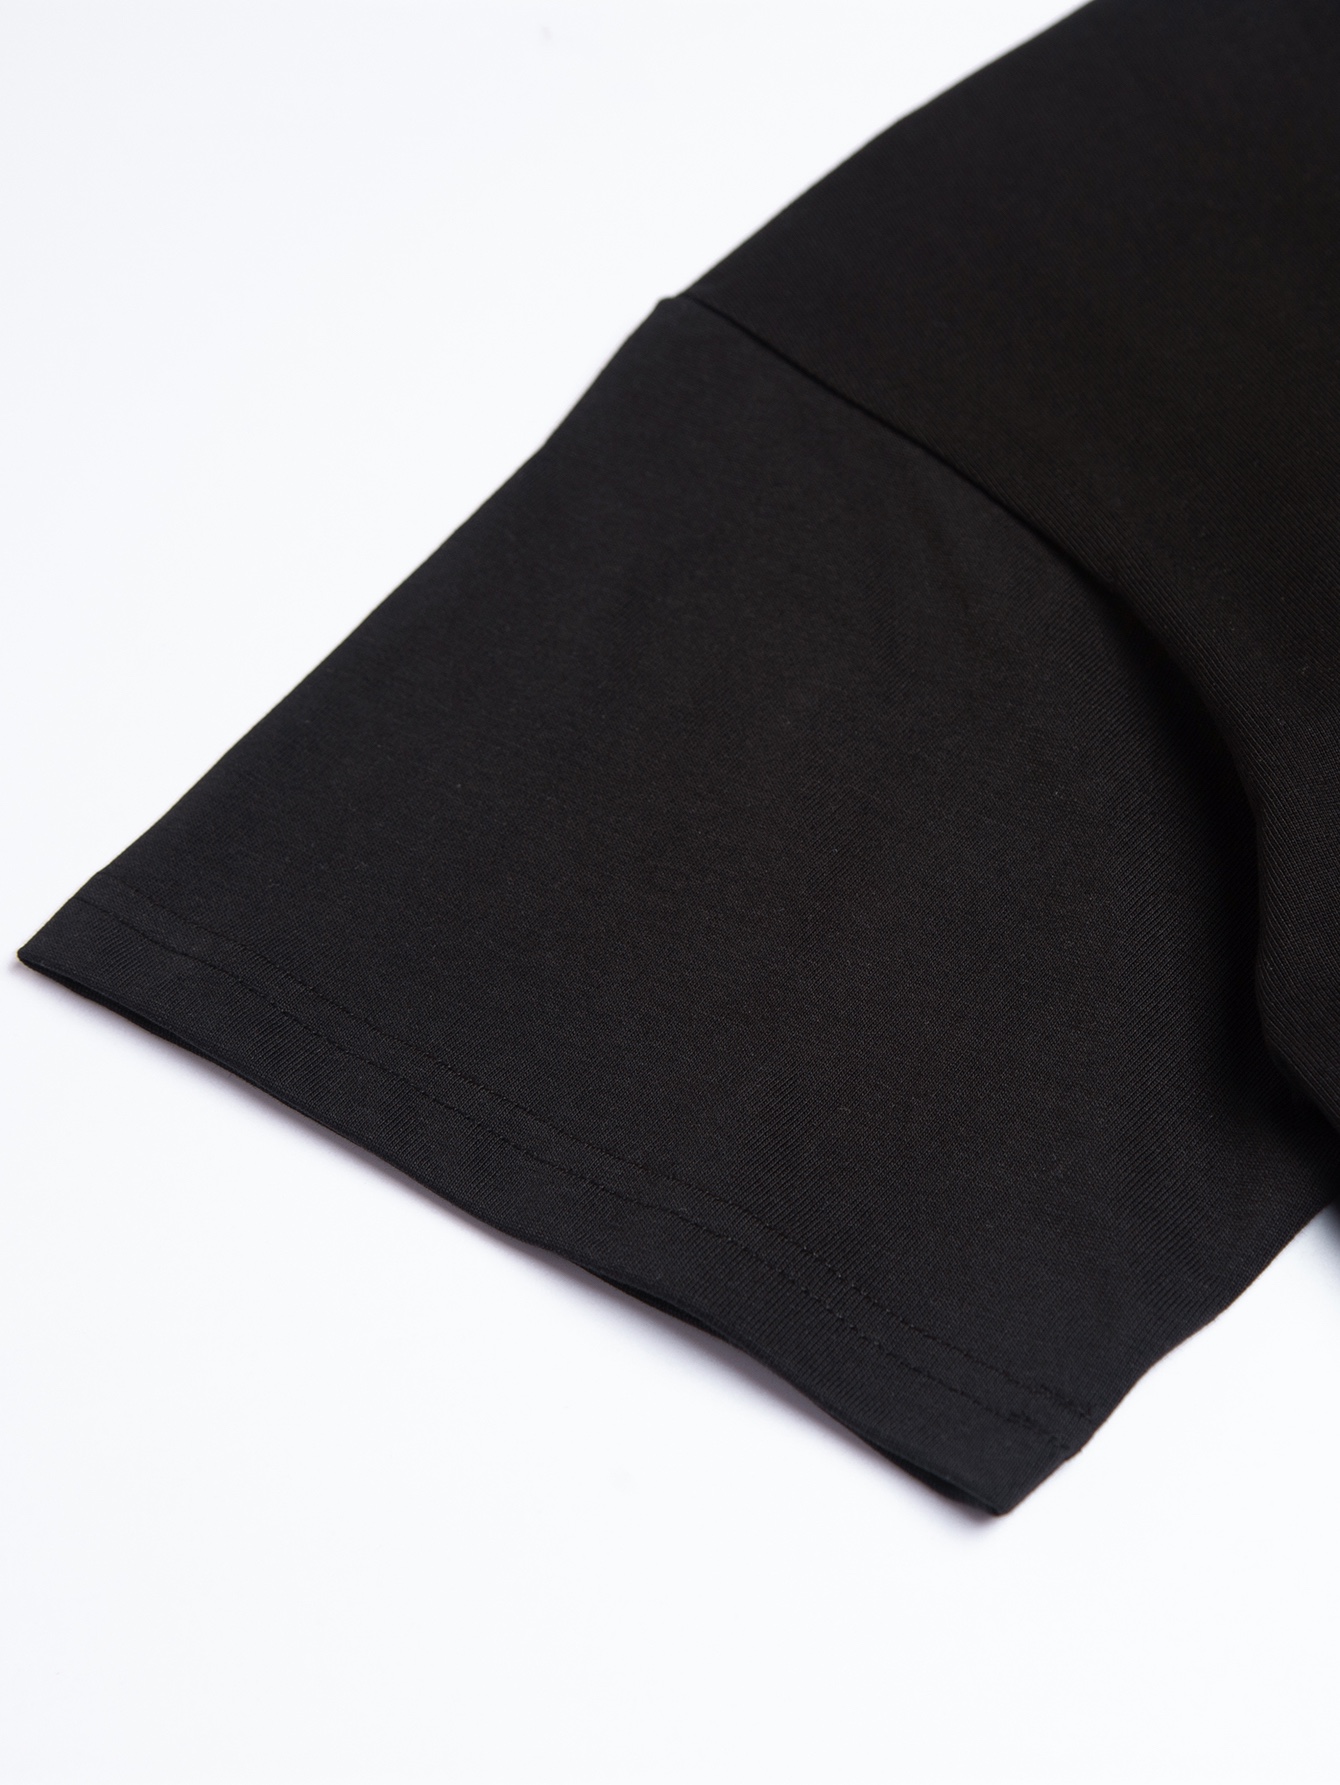 フェンディ ワイシャツスーパーコピー トップス 綿100% 短袖 Tシャツ 男女兼用 シンプル ファッション ブラック_9